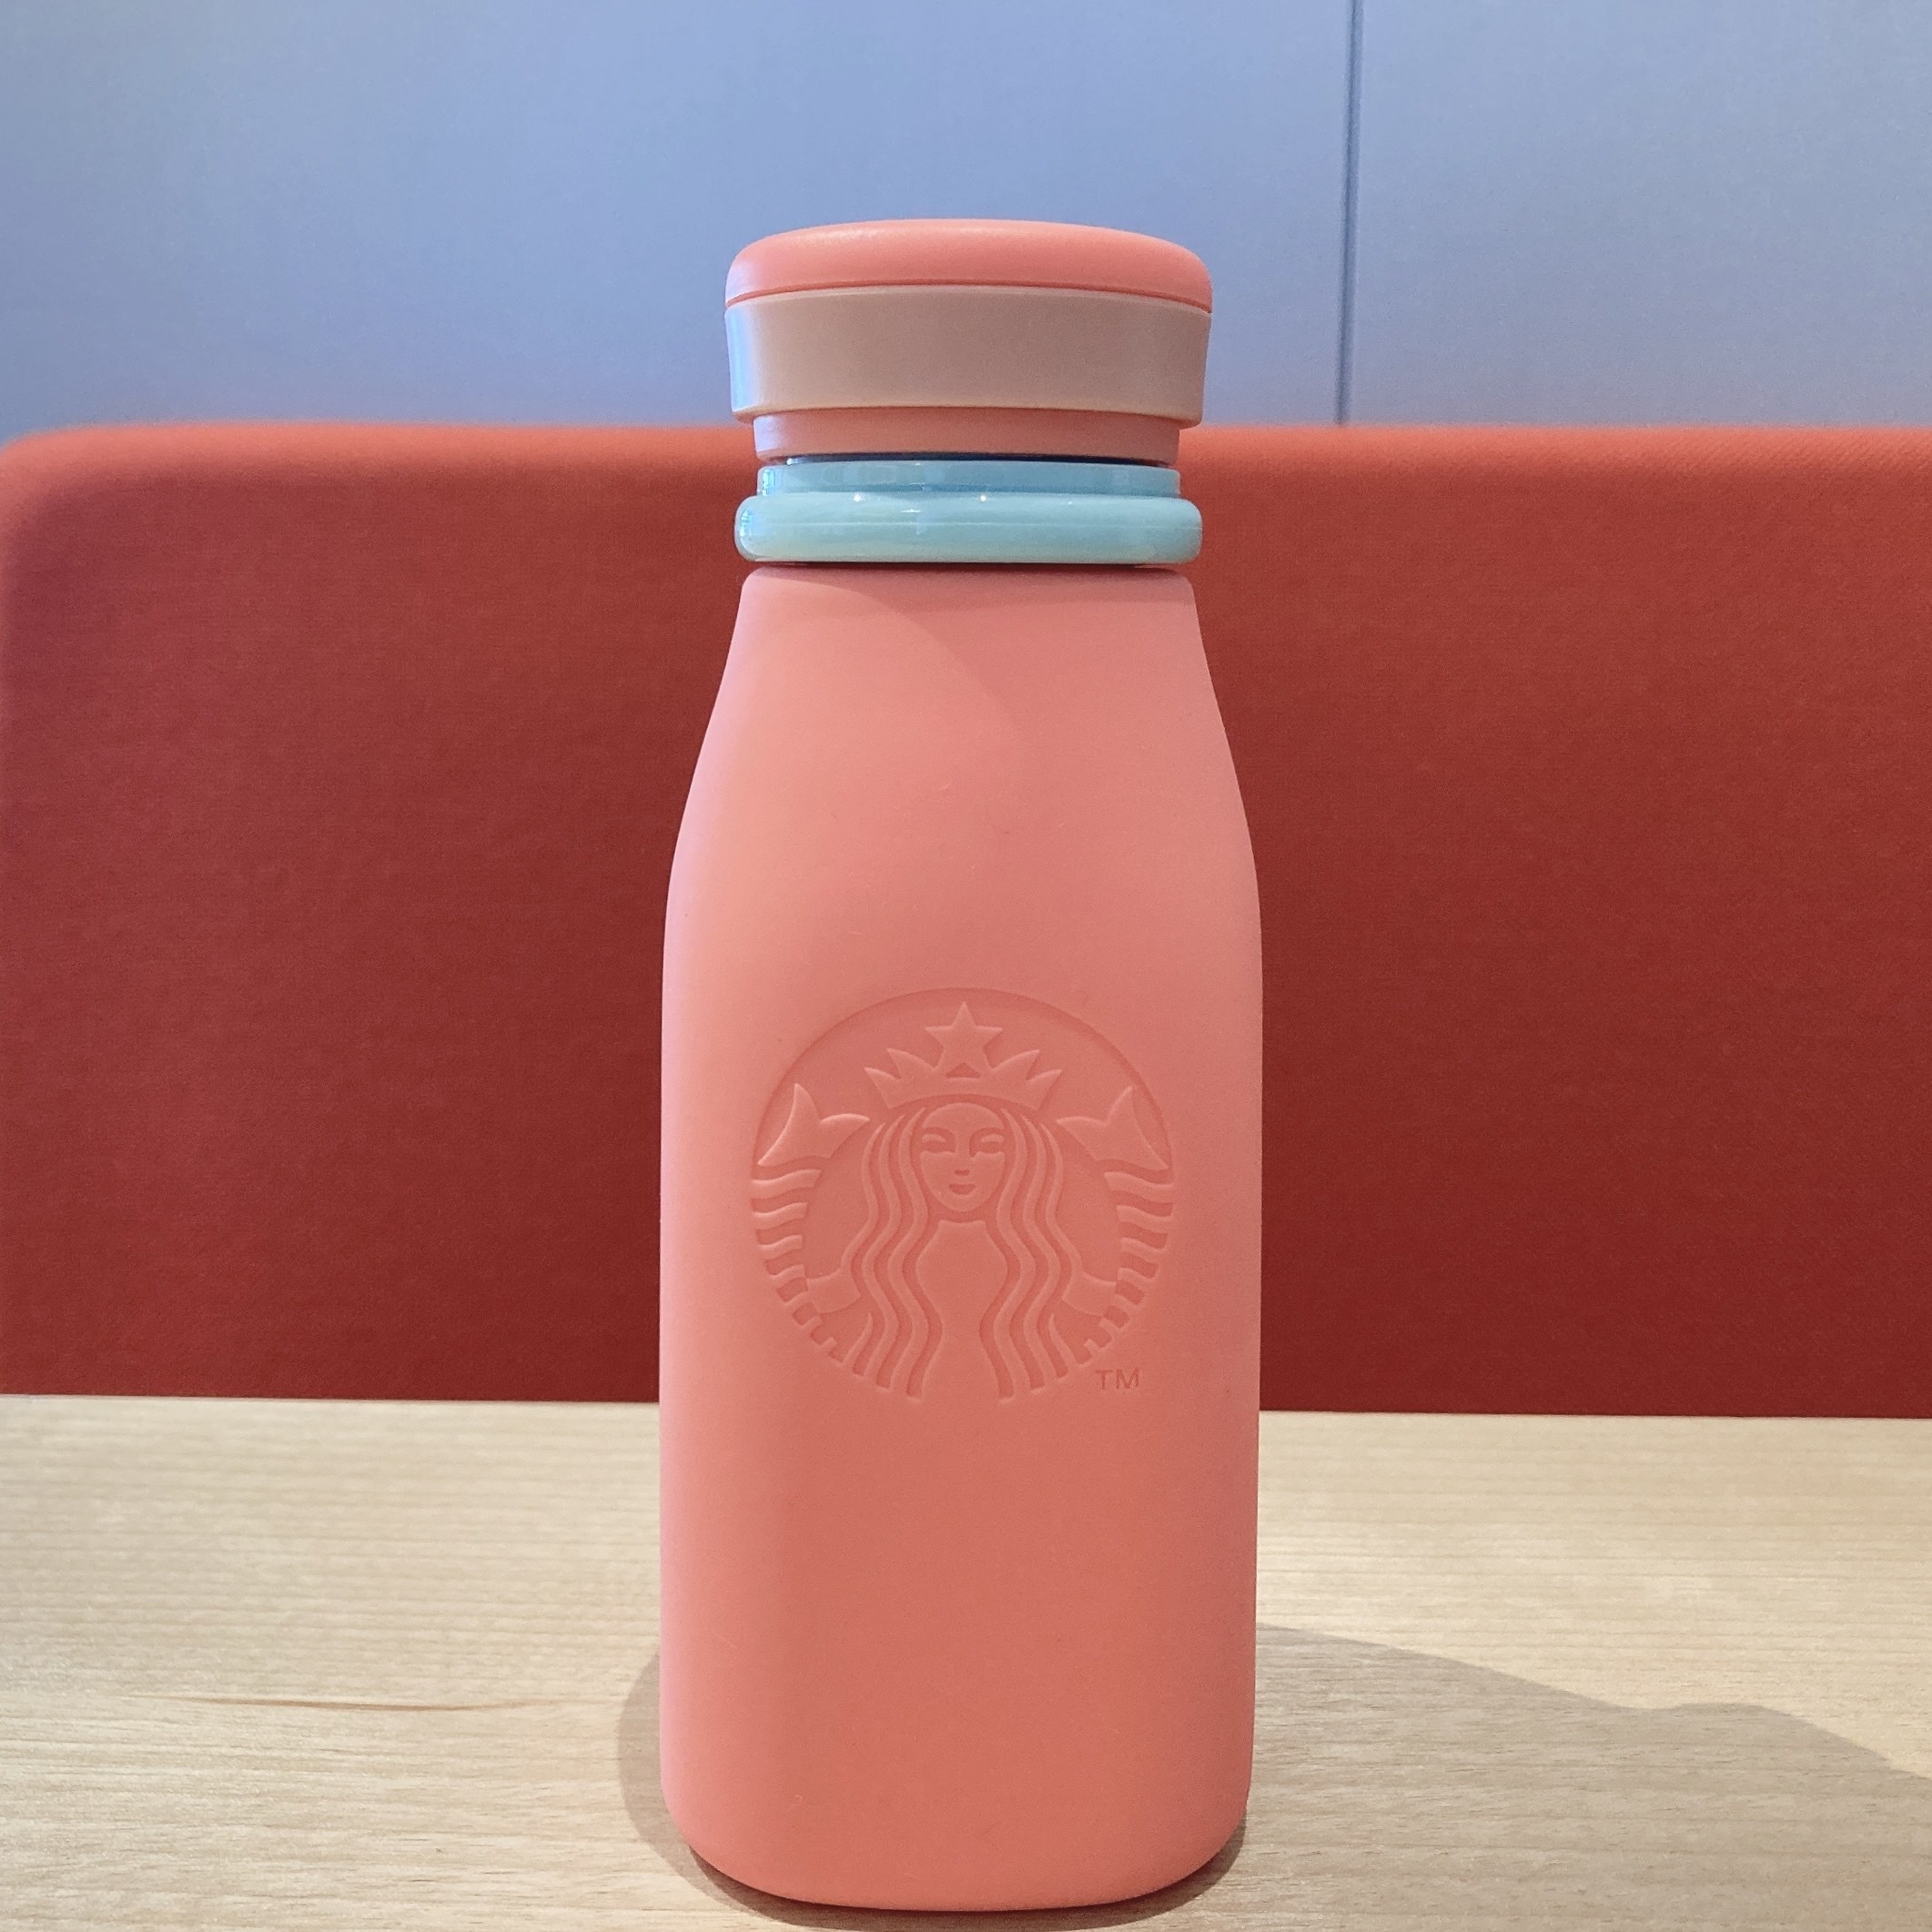 Starbucks Coffee（スターバックスコーヒー）のおすすめボトル「おりたたみシリコンボトルコーラルピンク355ml」